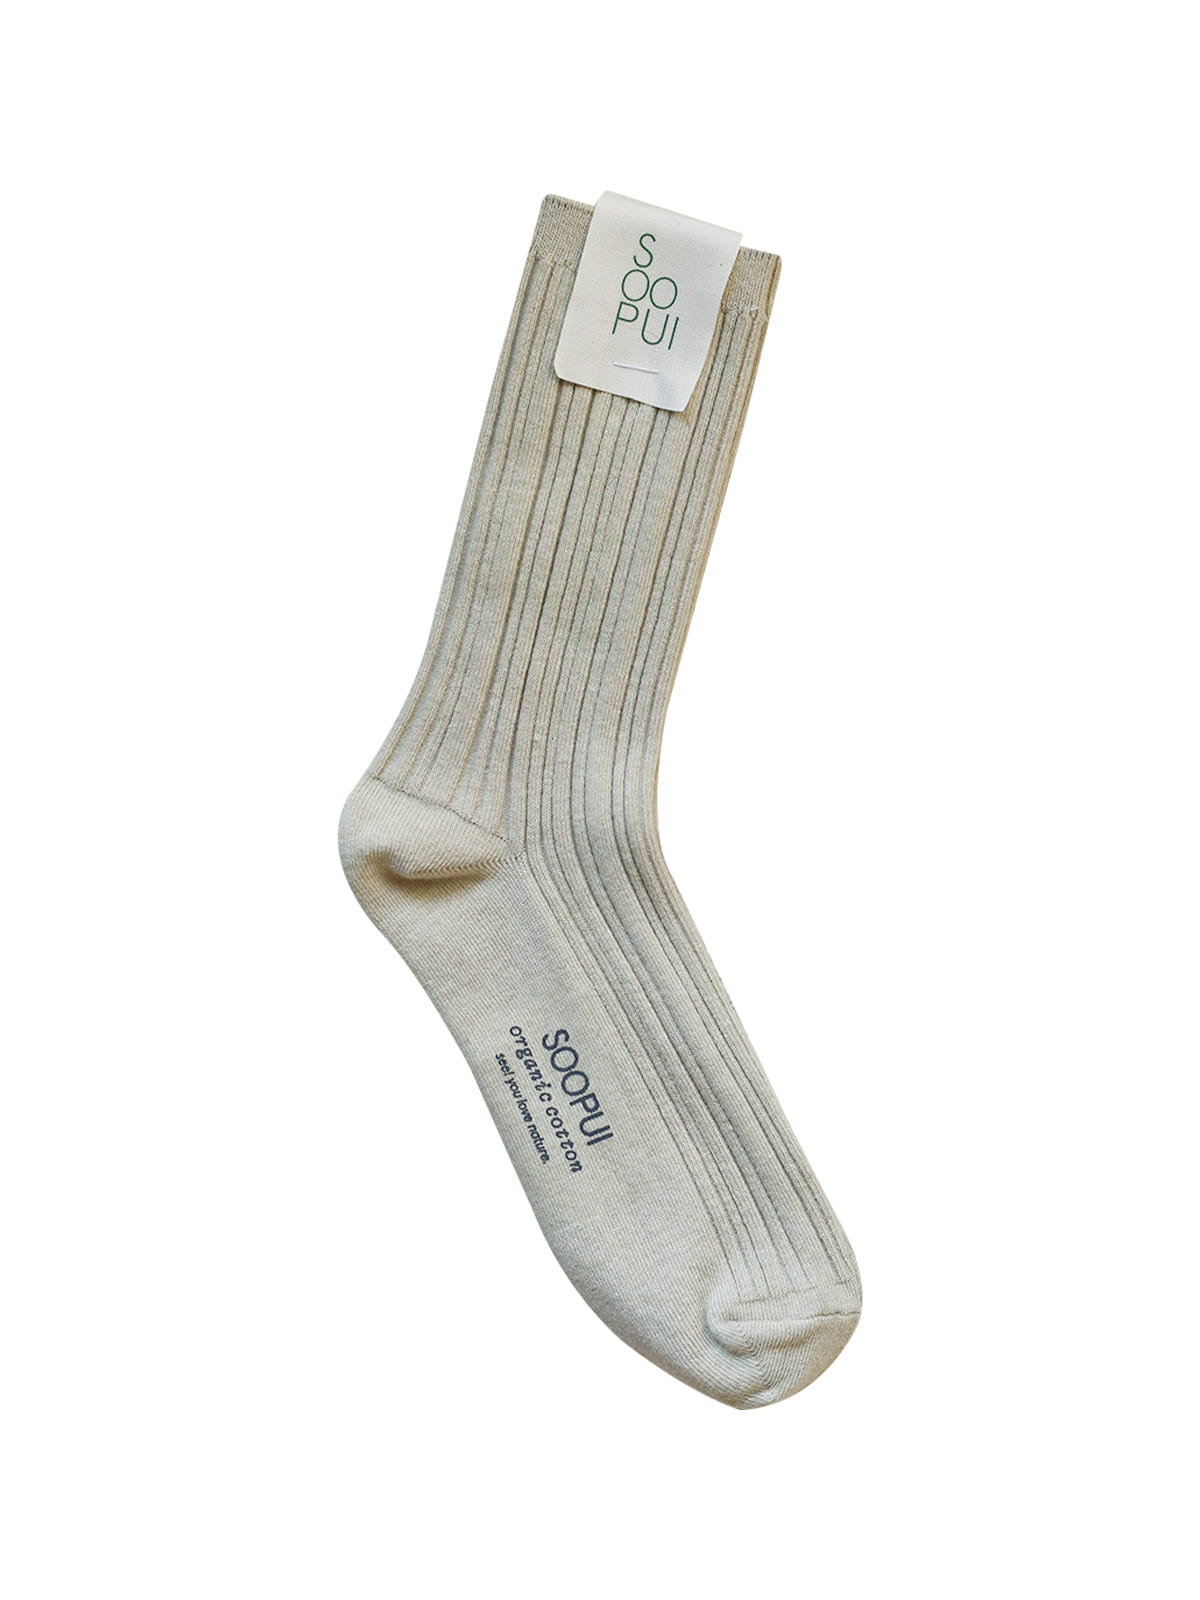 Organic cotton socks in raw green